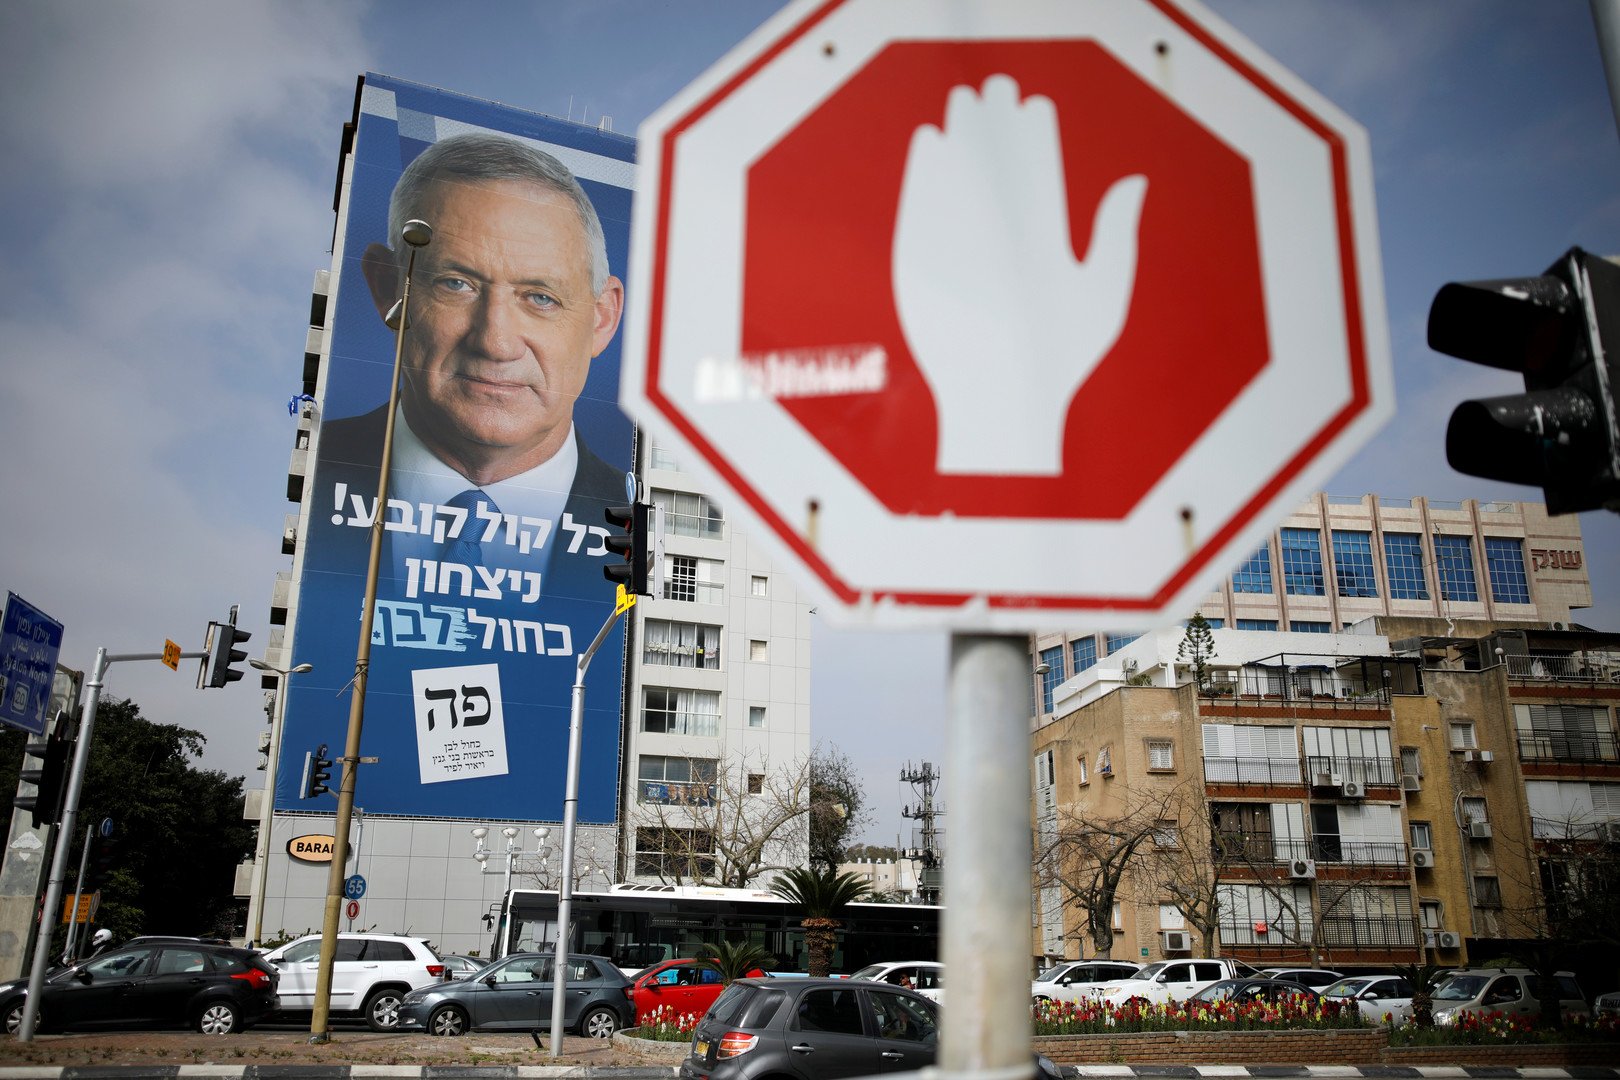 زعيم المعارضة الإسرائيلية: سنتحالف مع الليكود شرط أن لا يكون نتنياهو رئيسا للحكومة